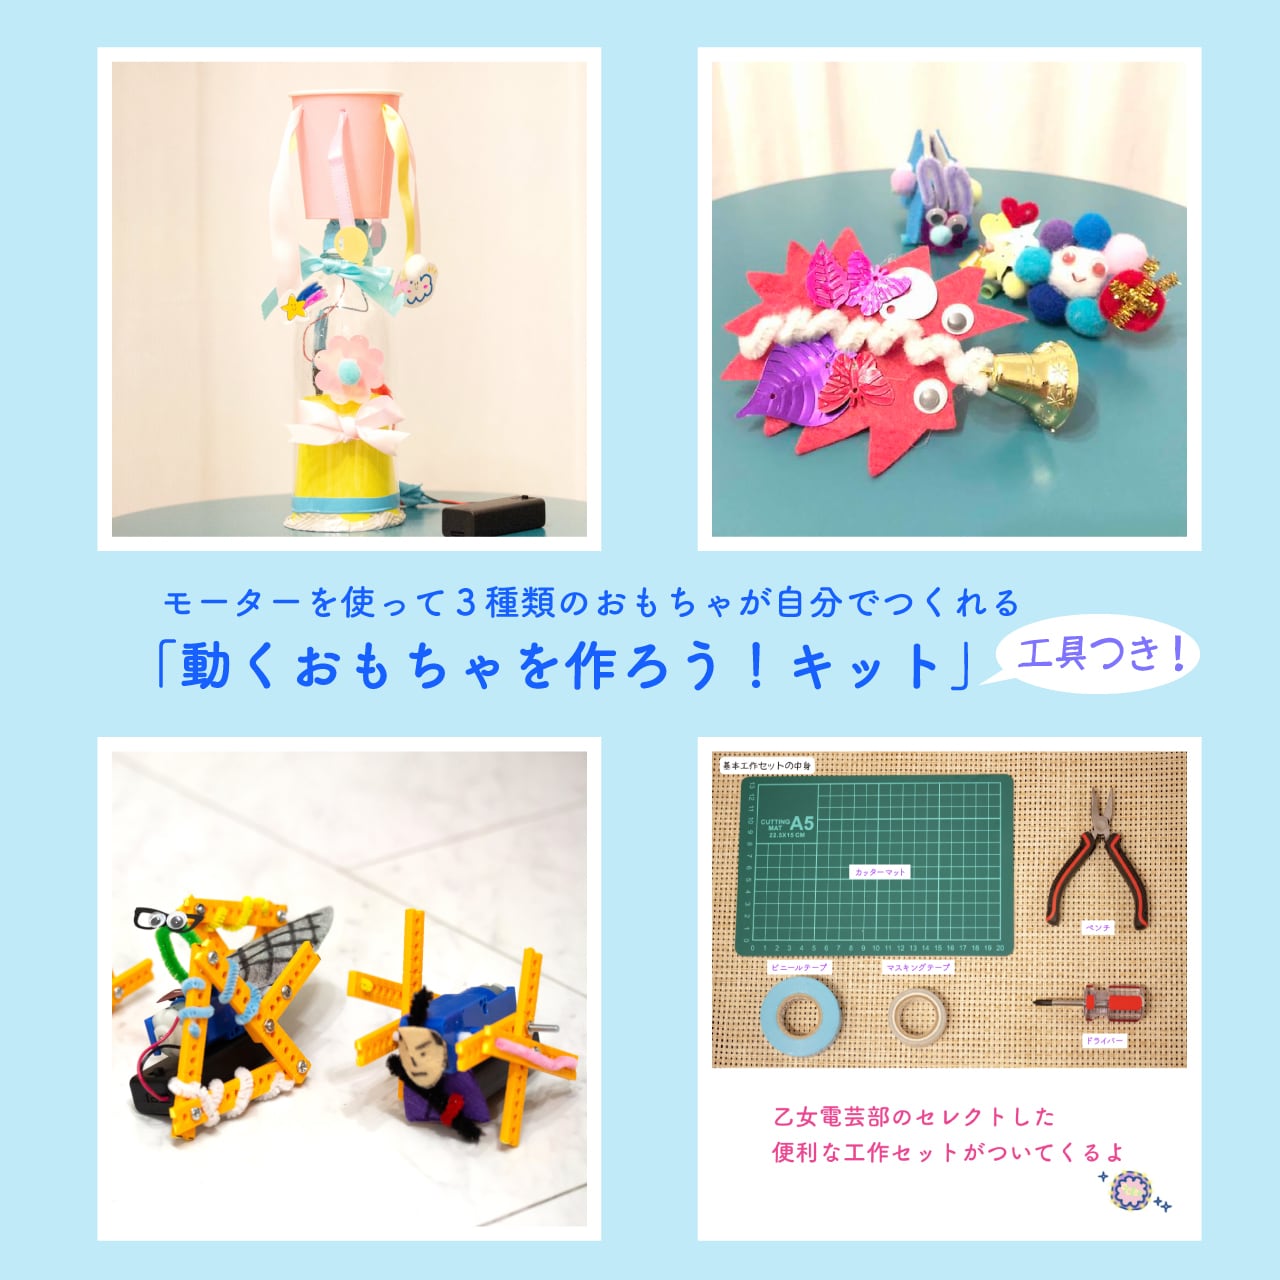 動くおもちゃを作ろう ３種キット 基本工作セット 乙女電芸部のキット販売shop